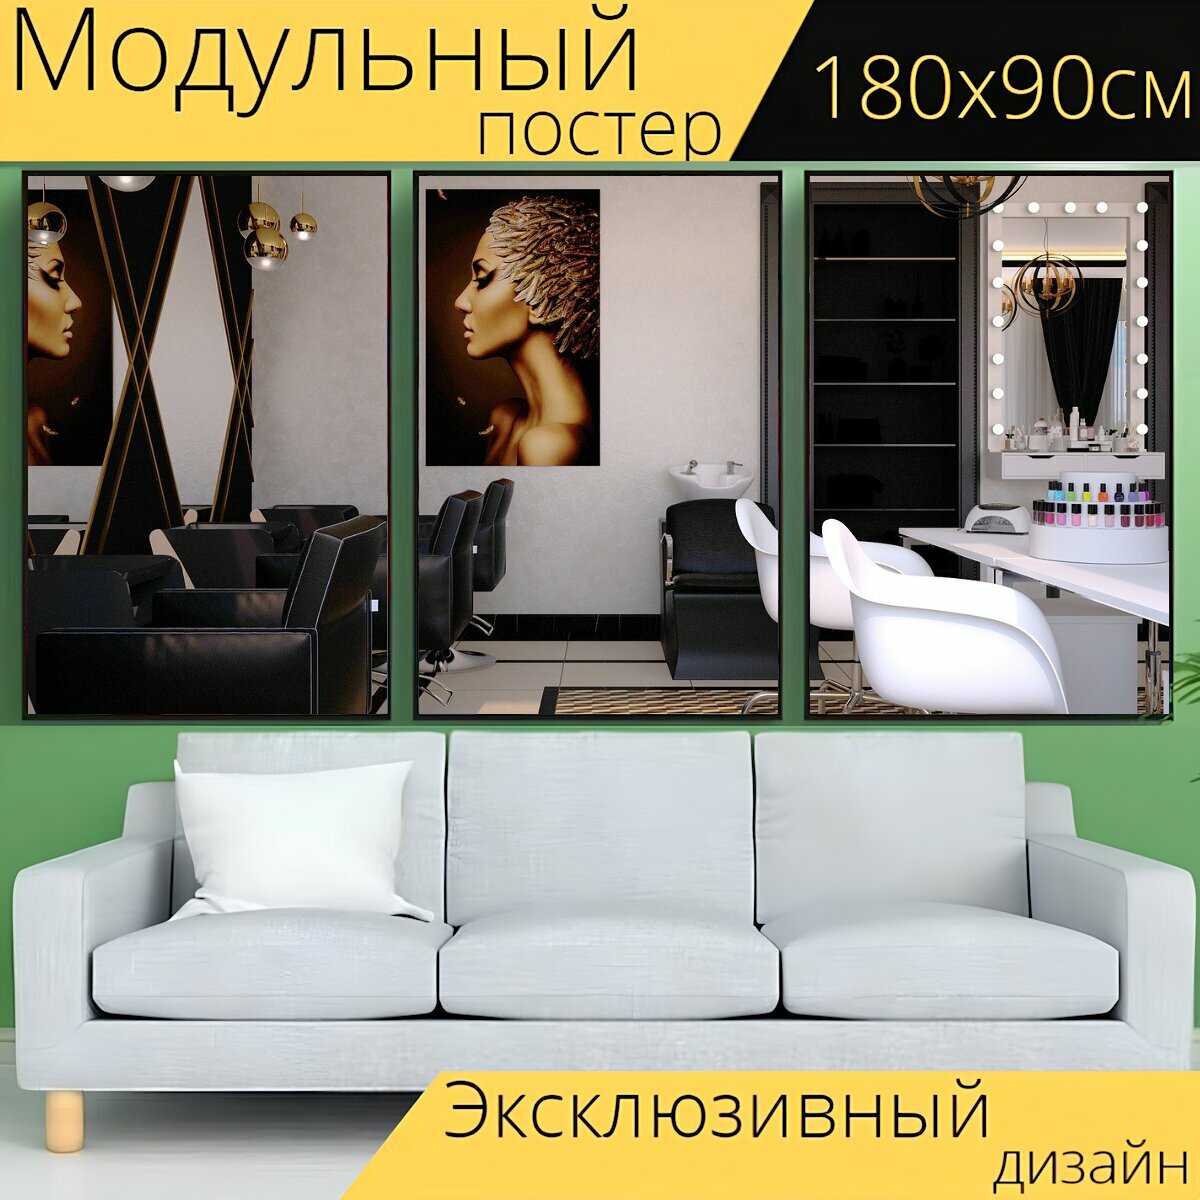 Модульный постер "Салон красоты, парикмахерская, маникюрный салон" 180 x 90 см. для интерьера